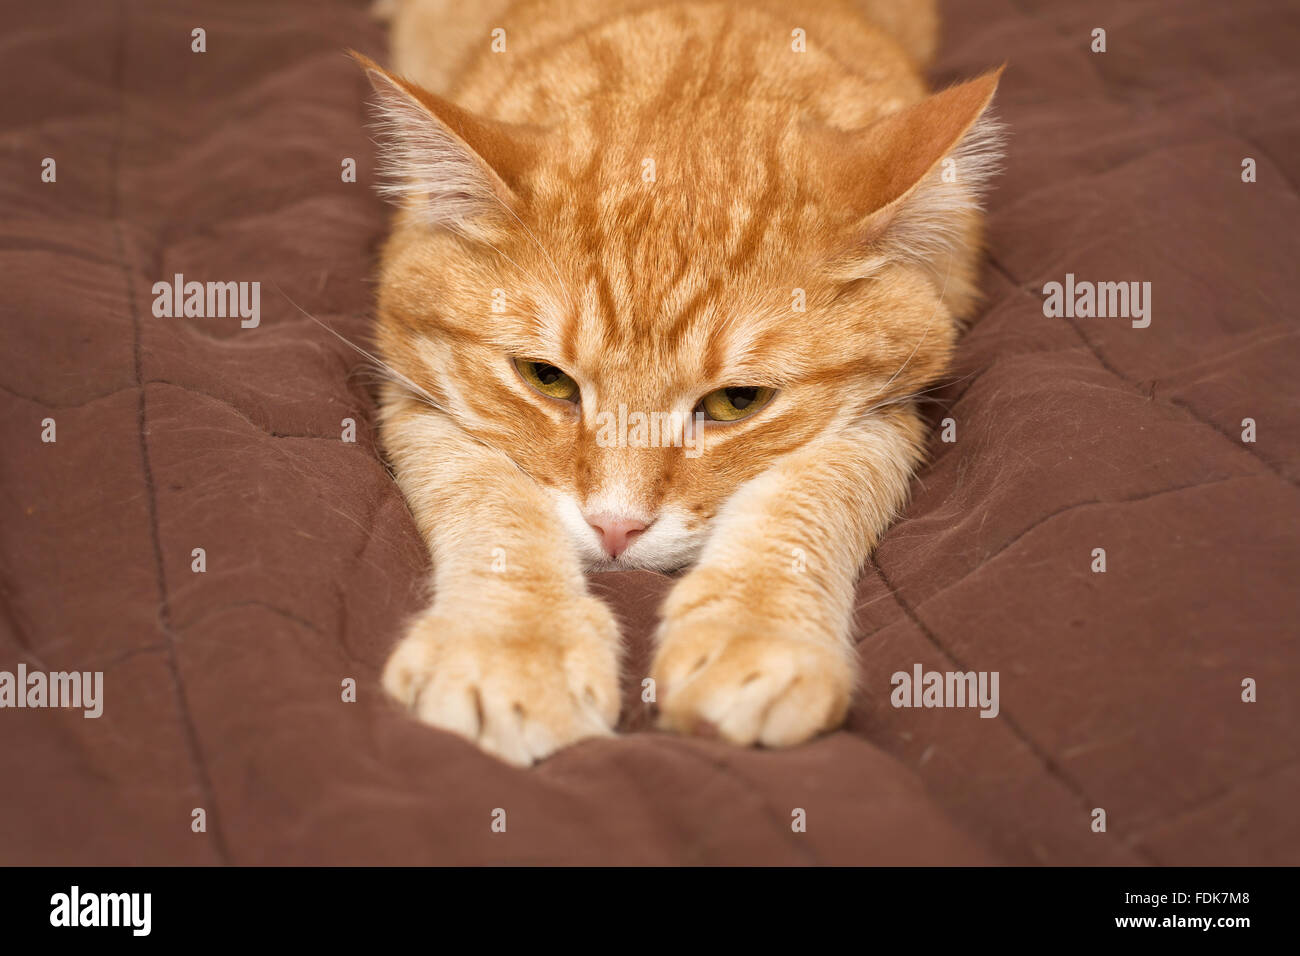 Big cat gingembre est paresseusement sur le lit Banque D'Images